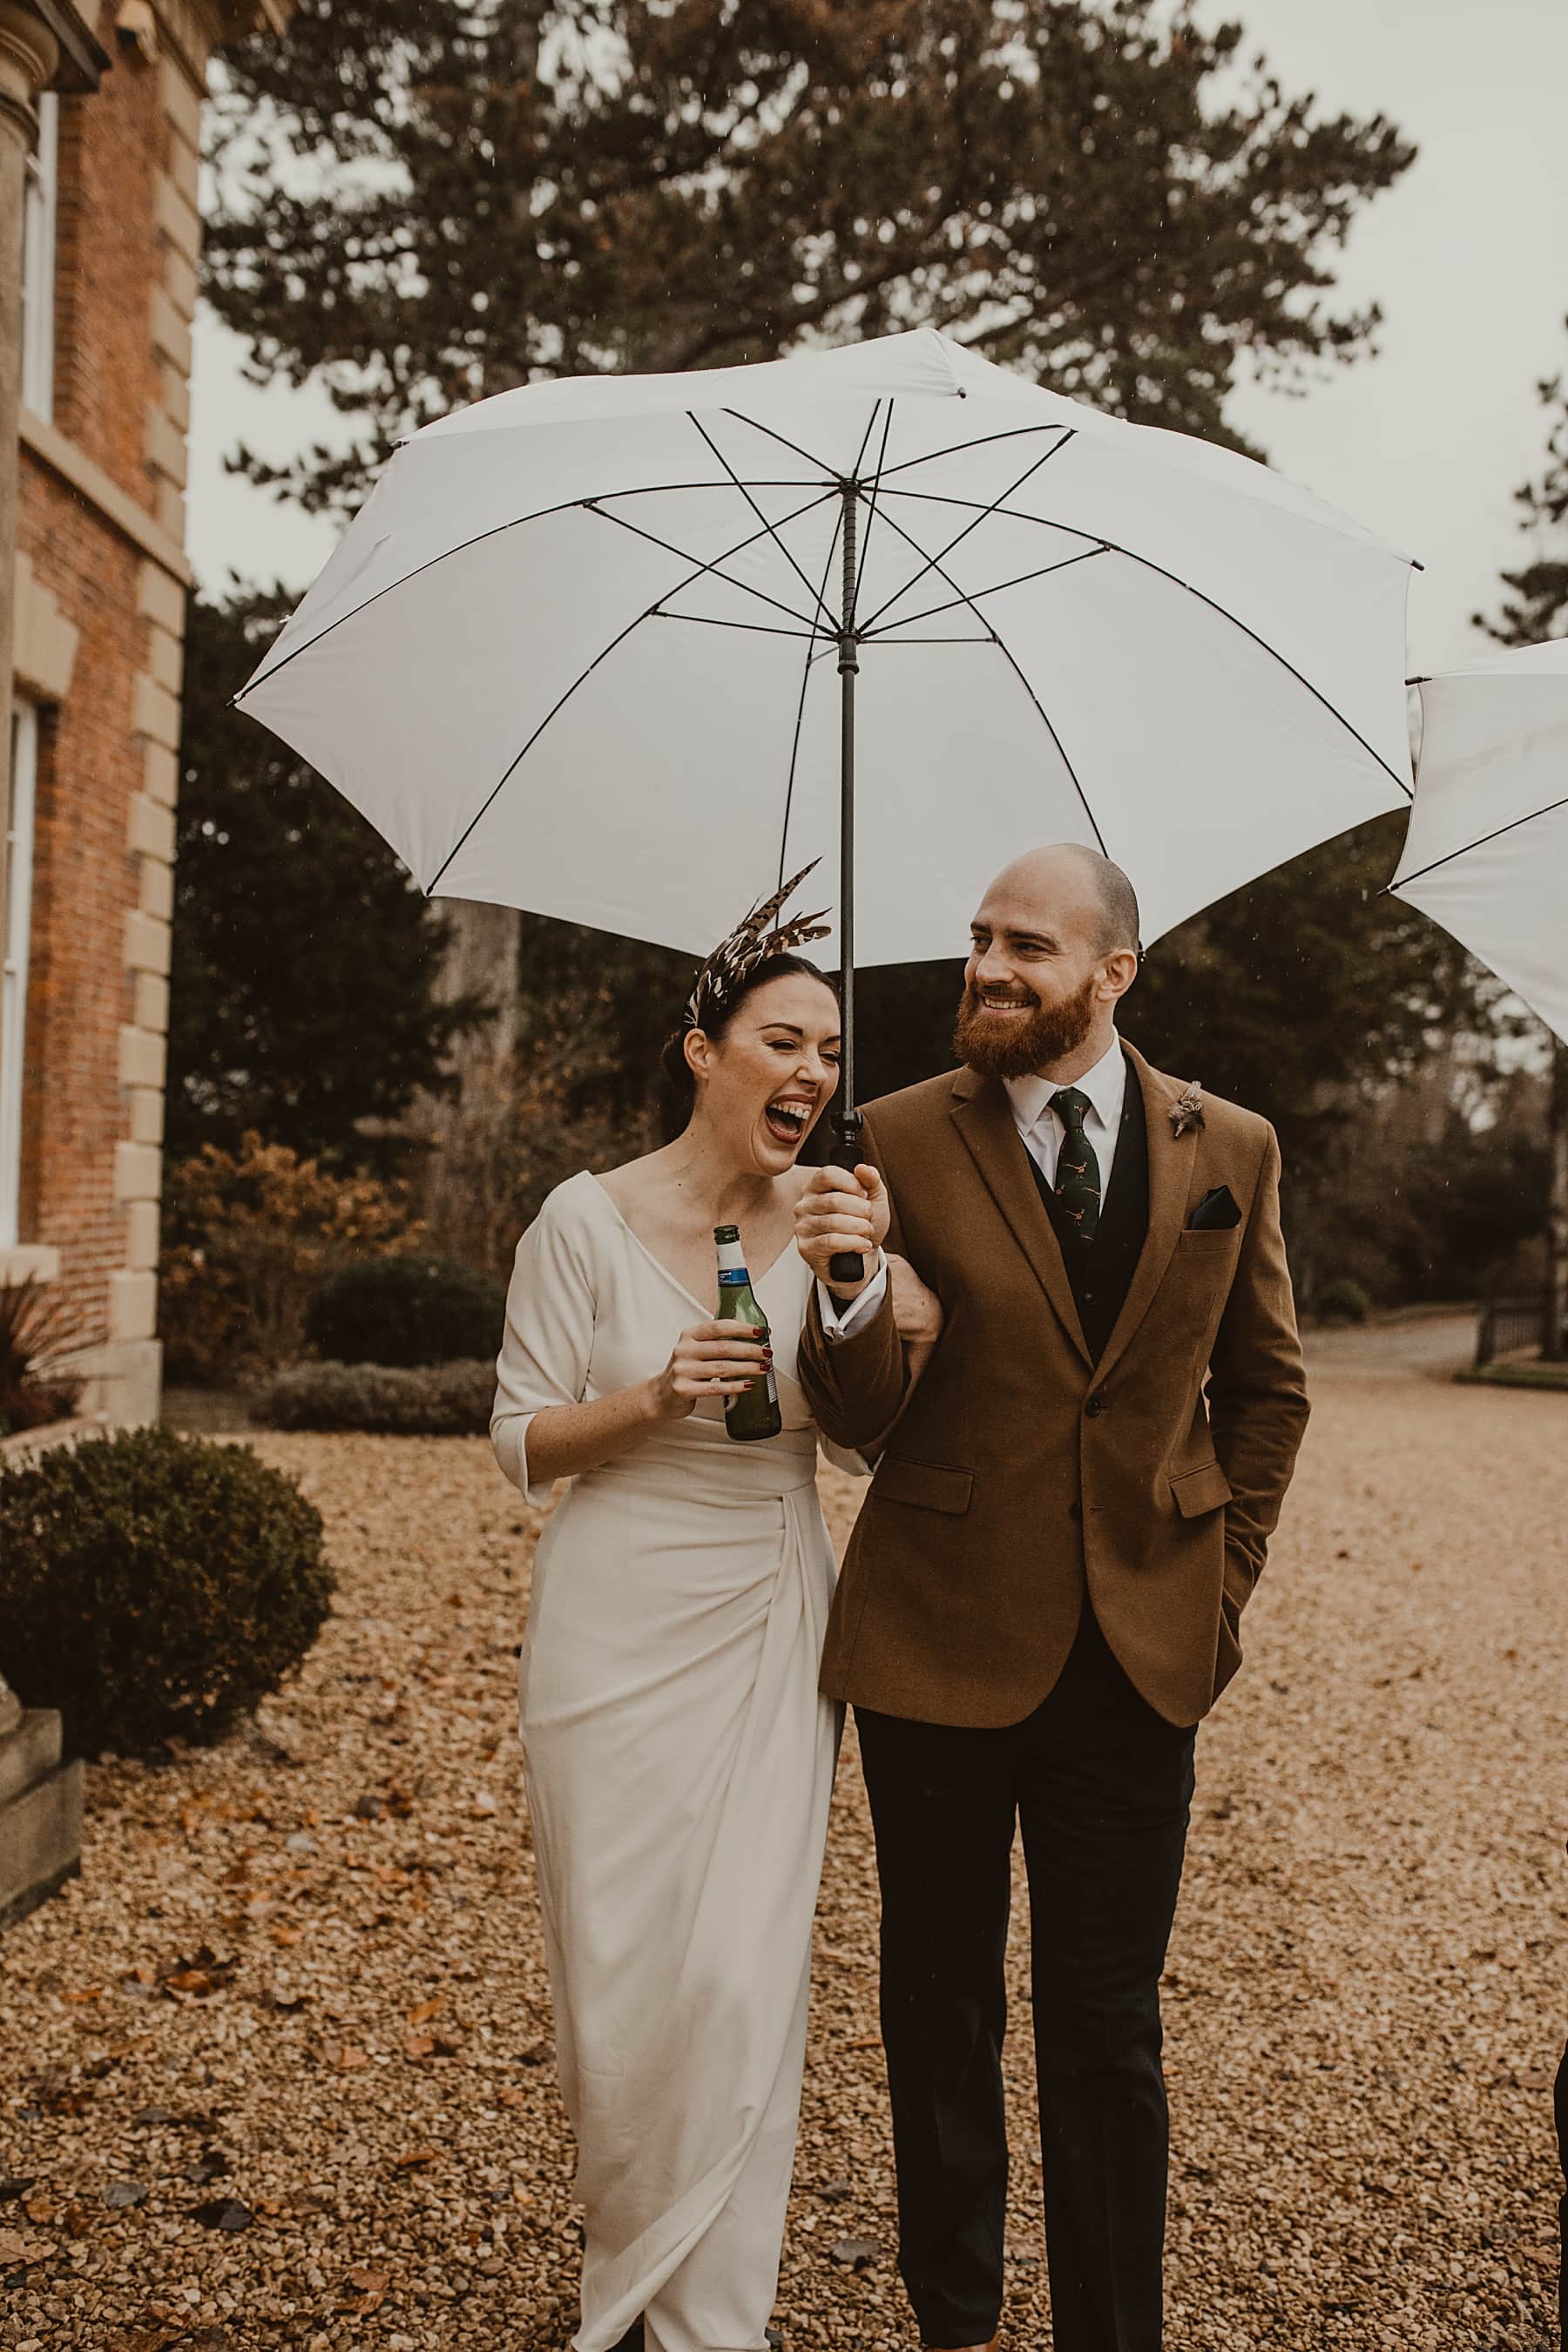 Bride and groom walking in rain